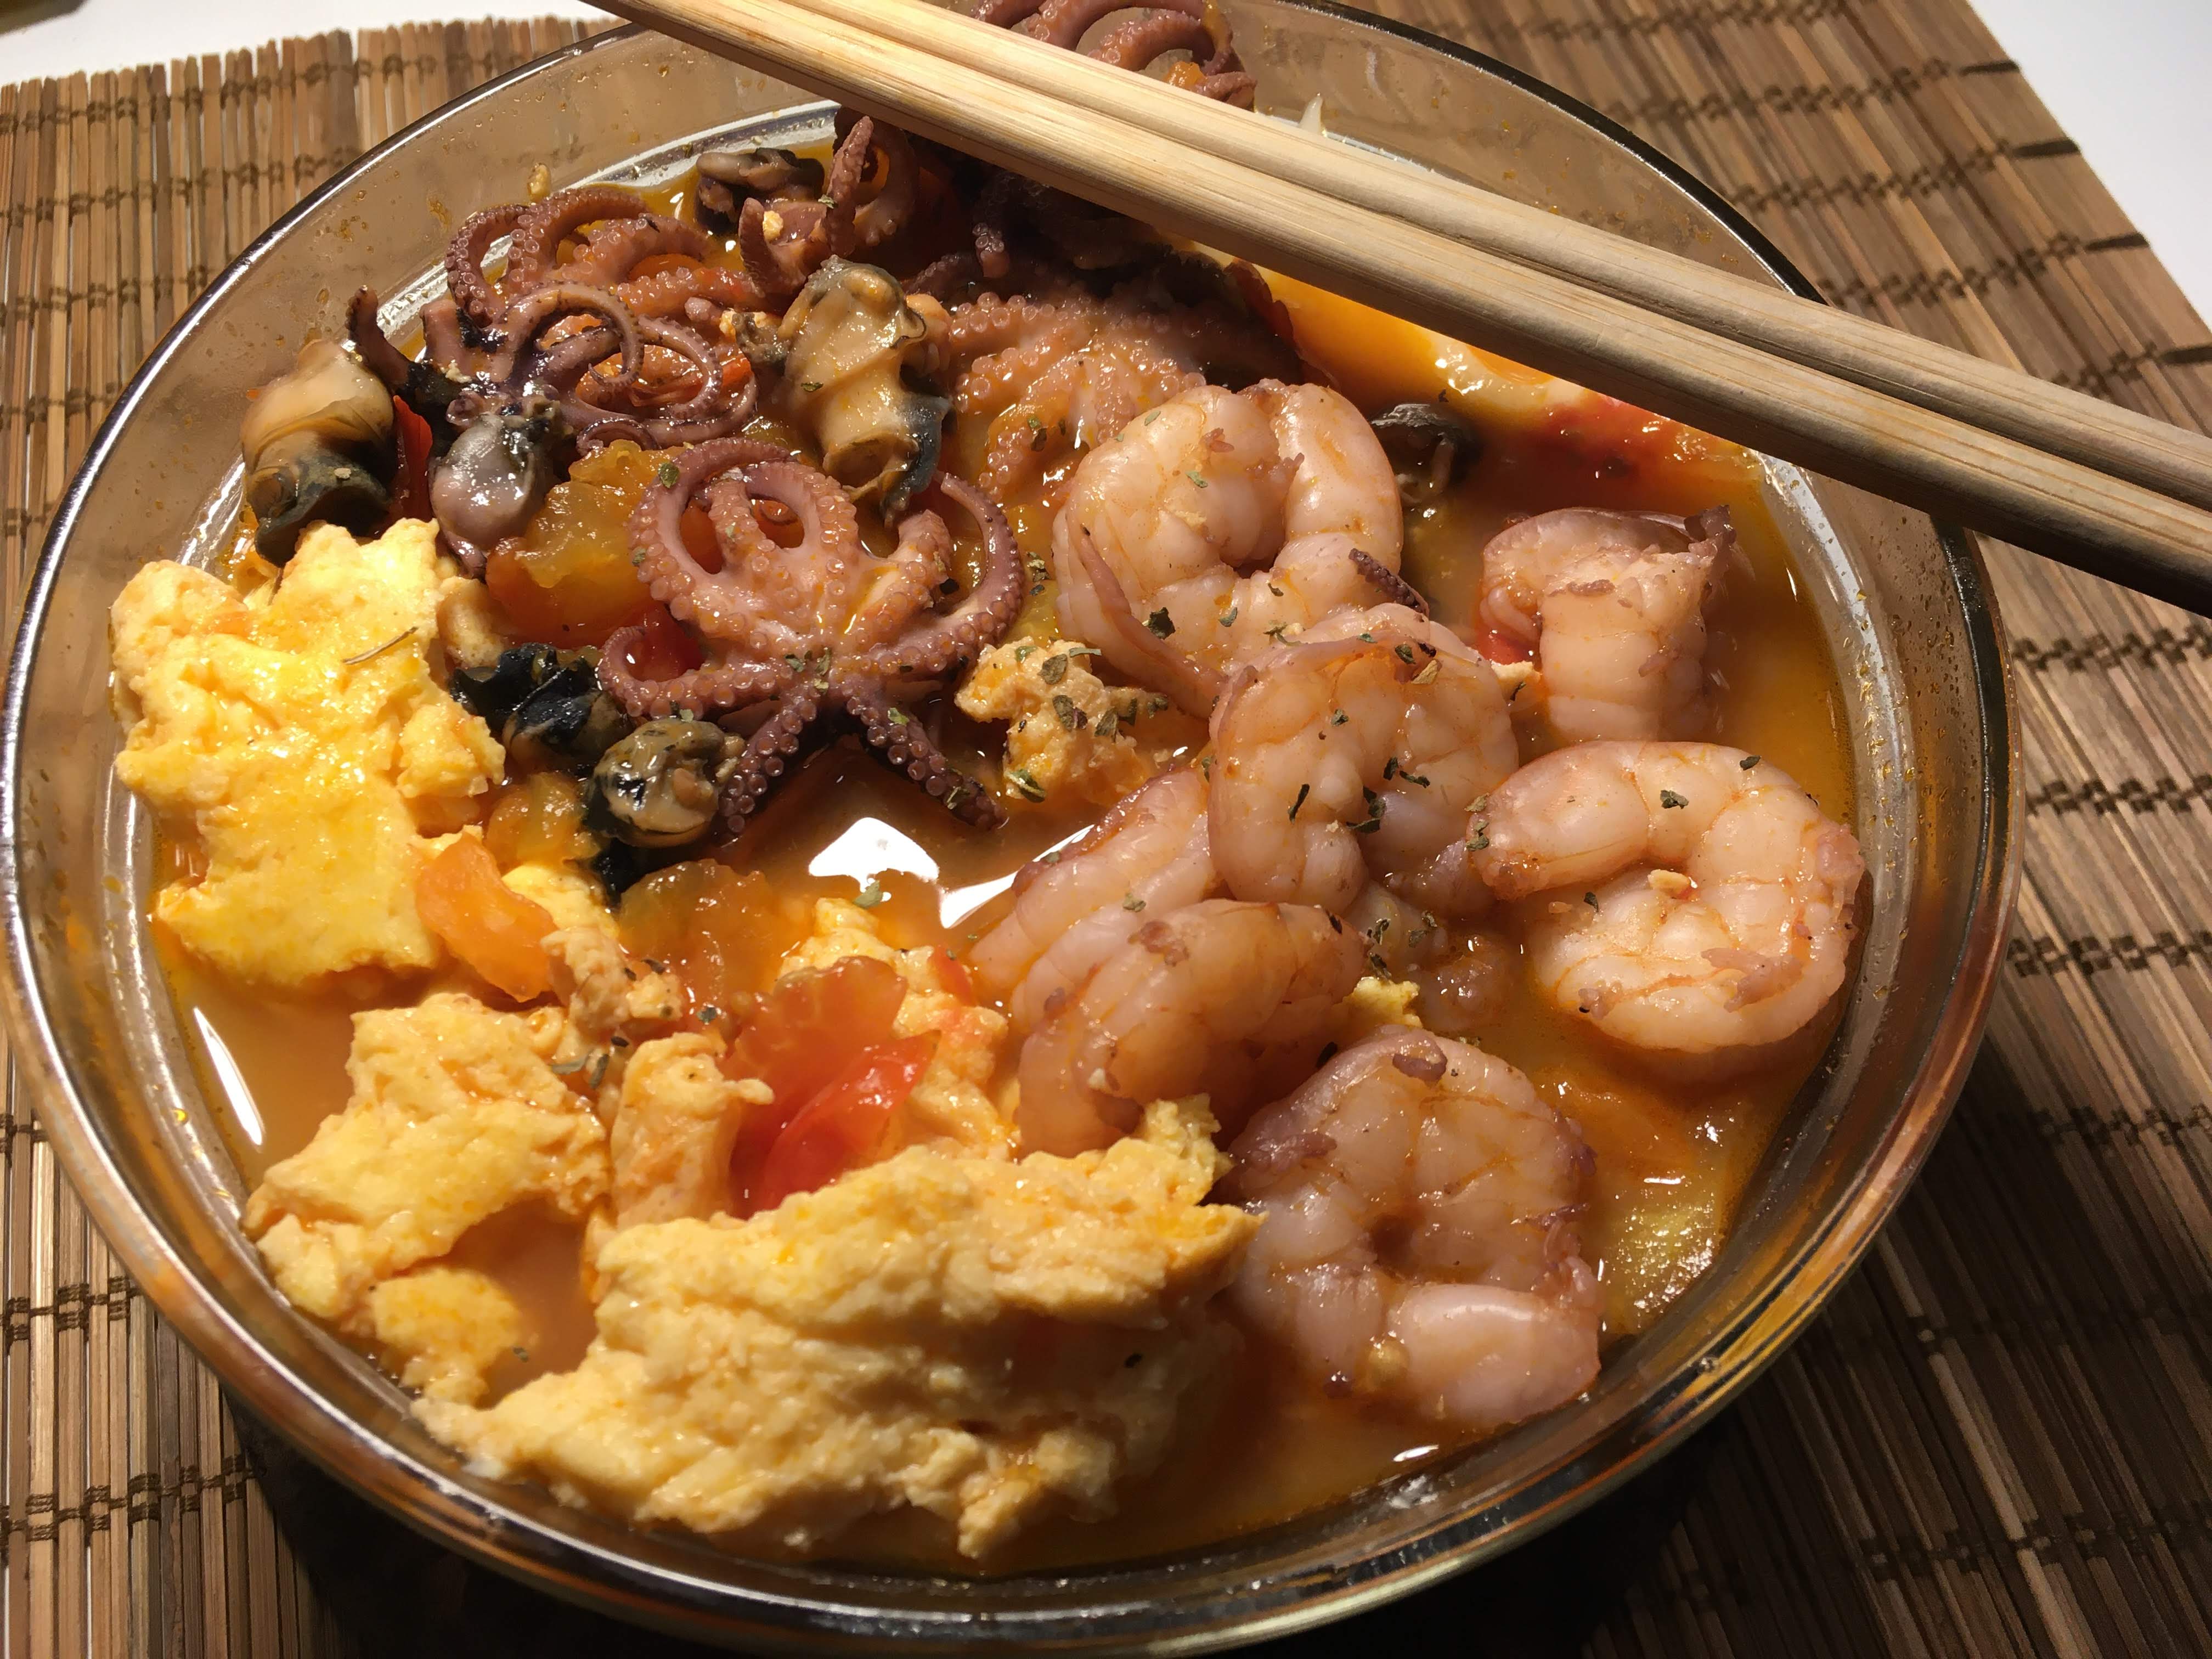 万一是最后一份菜谱呢 福寿螺海鲜芙蓉乌冬面的做法步骤图 暗黑料理界首领 下厨房